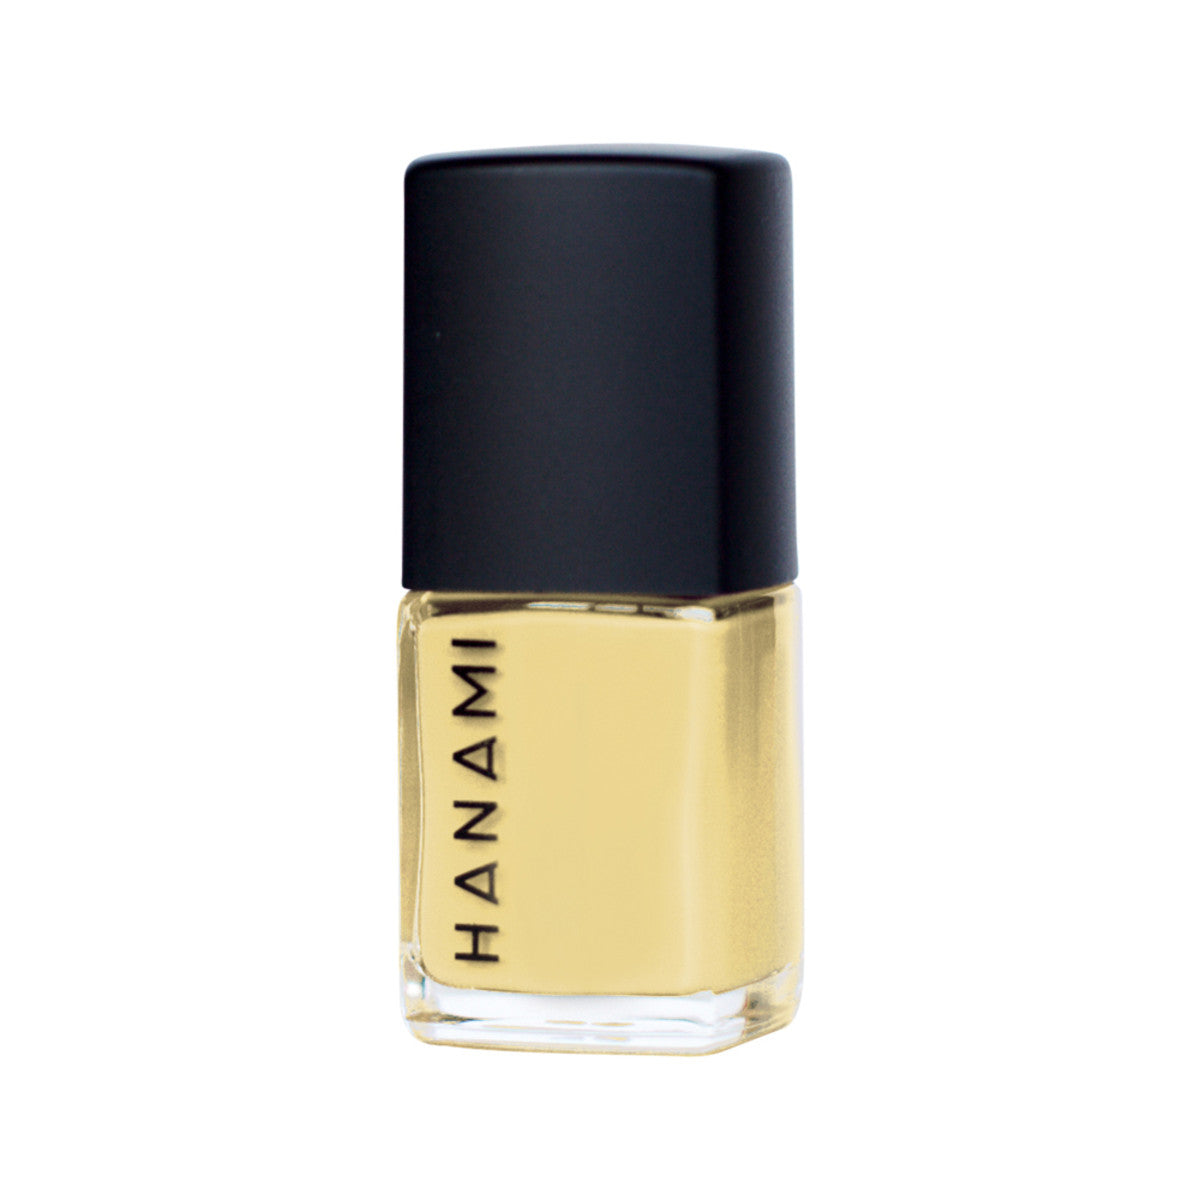 Hanami - Nail Polish Forsythia 15ml